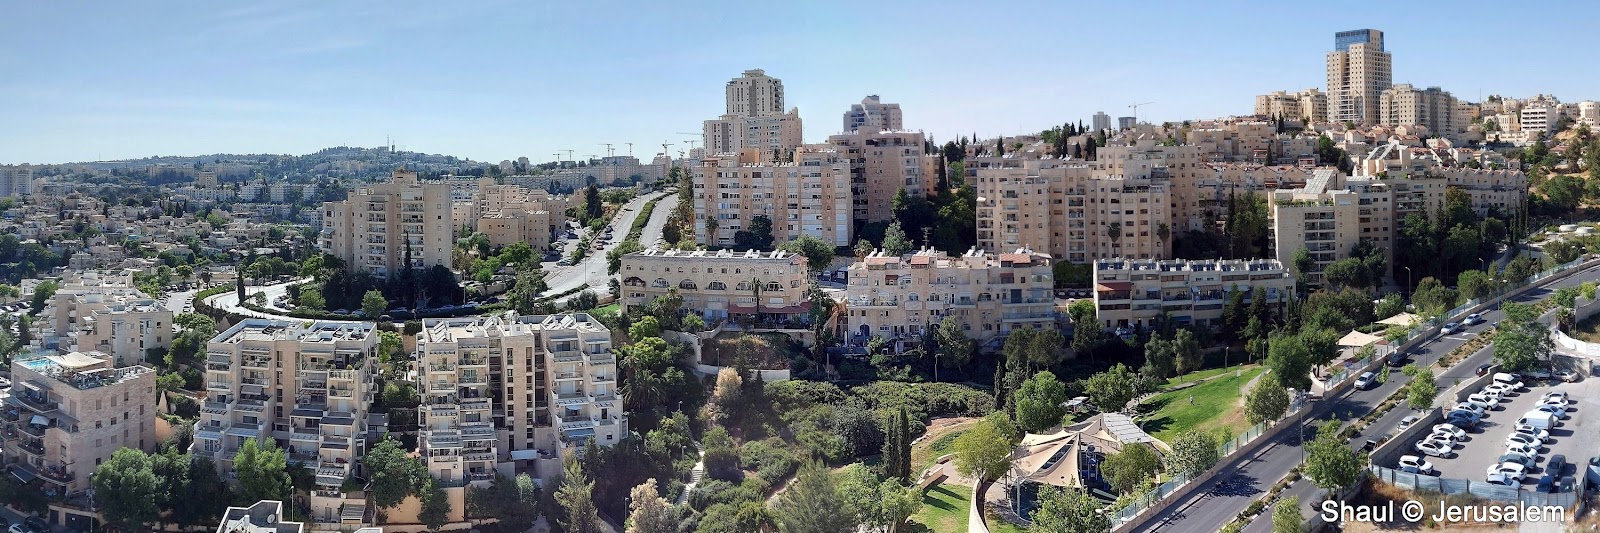 נוף יפה בירושלים